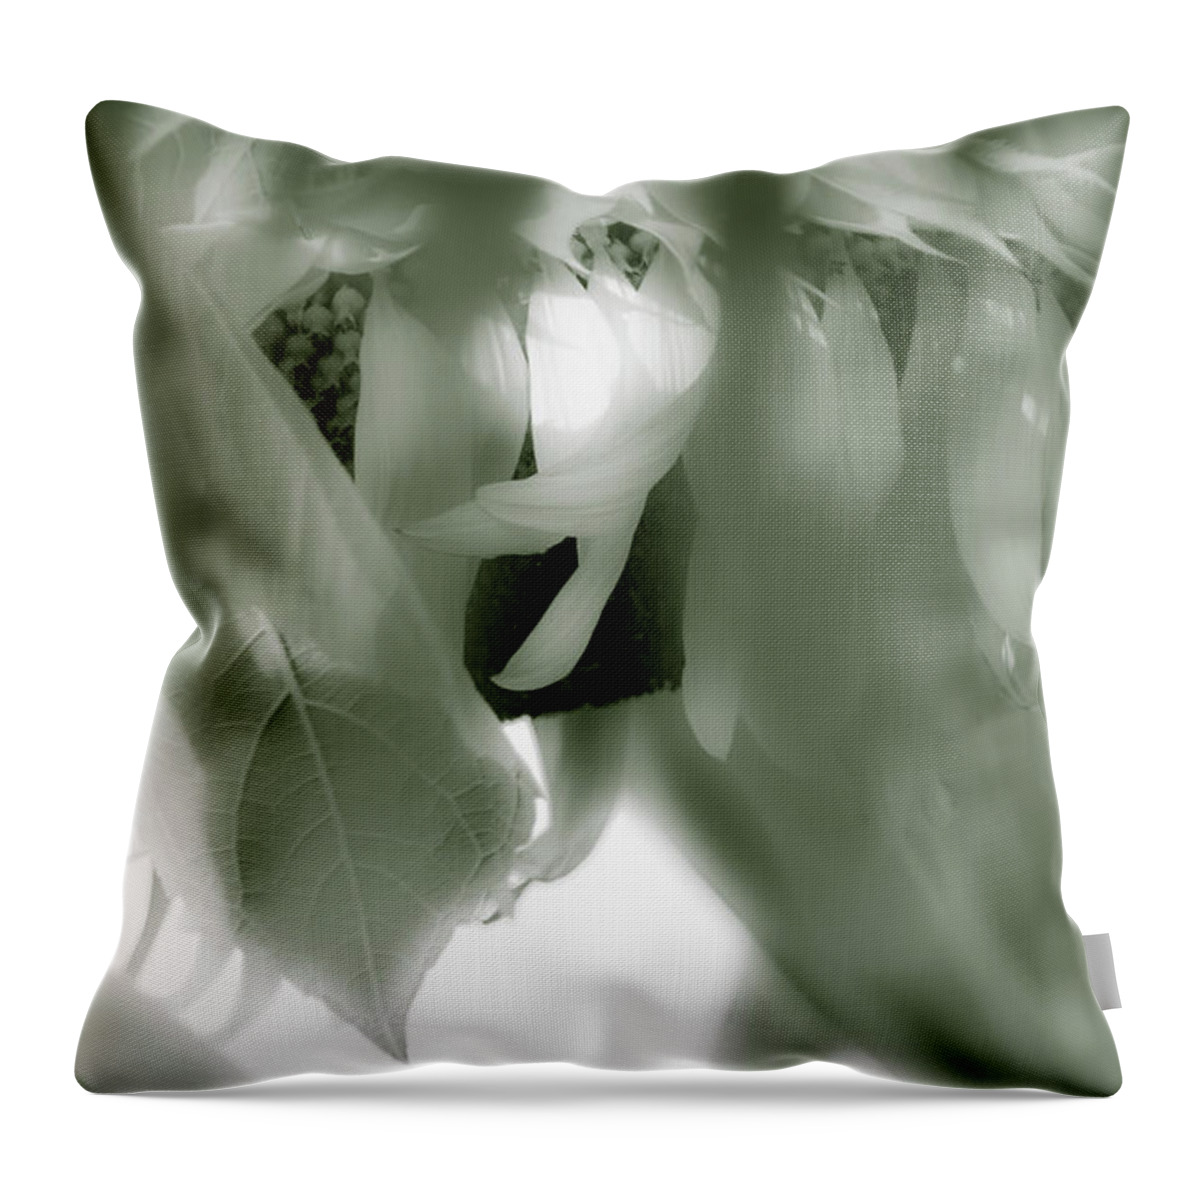 Gossamer Veil Throw Pillow featuring the photograph Gossamer Veil by Julie Weber